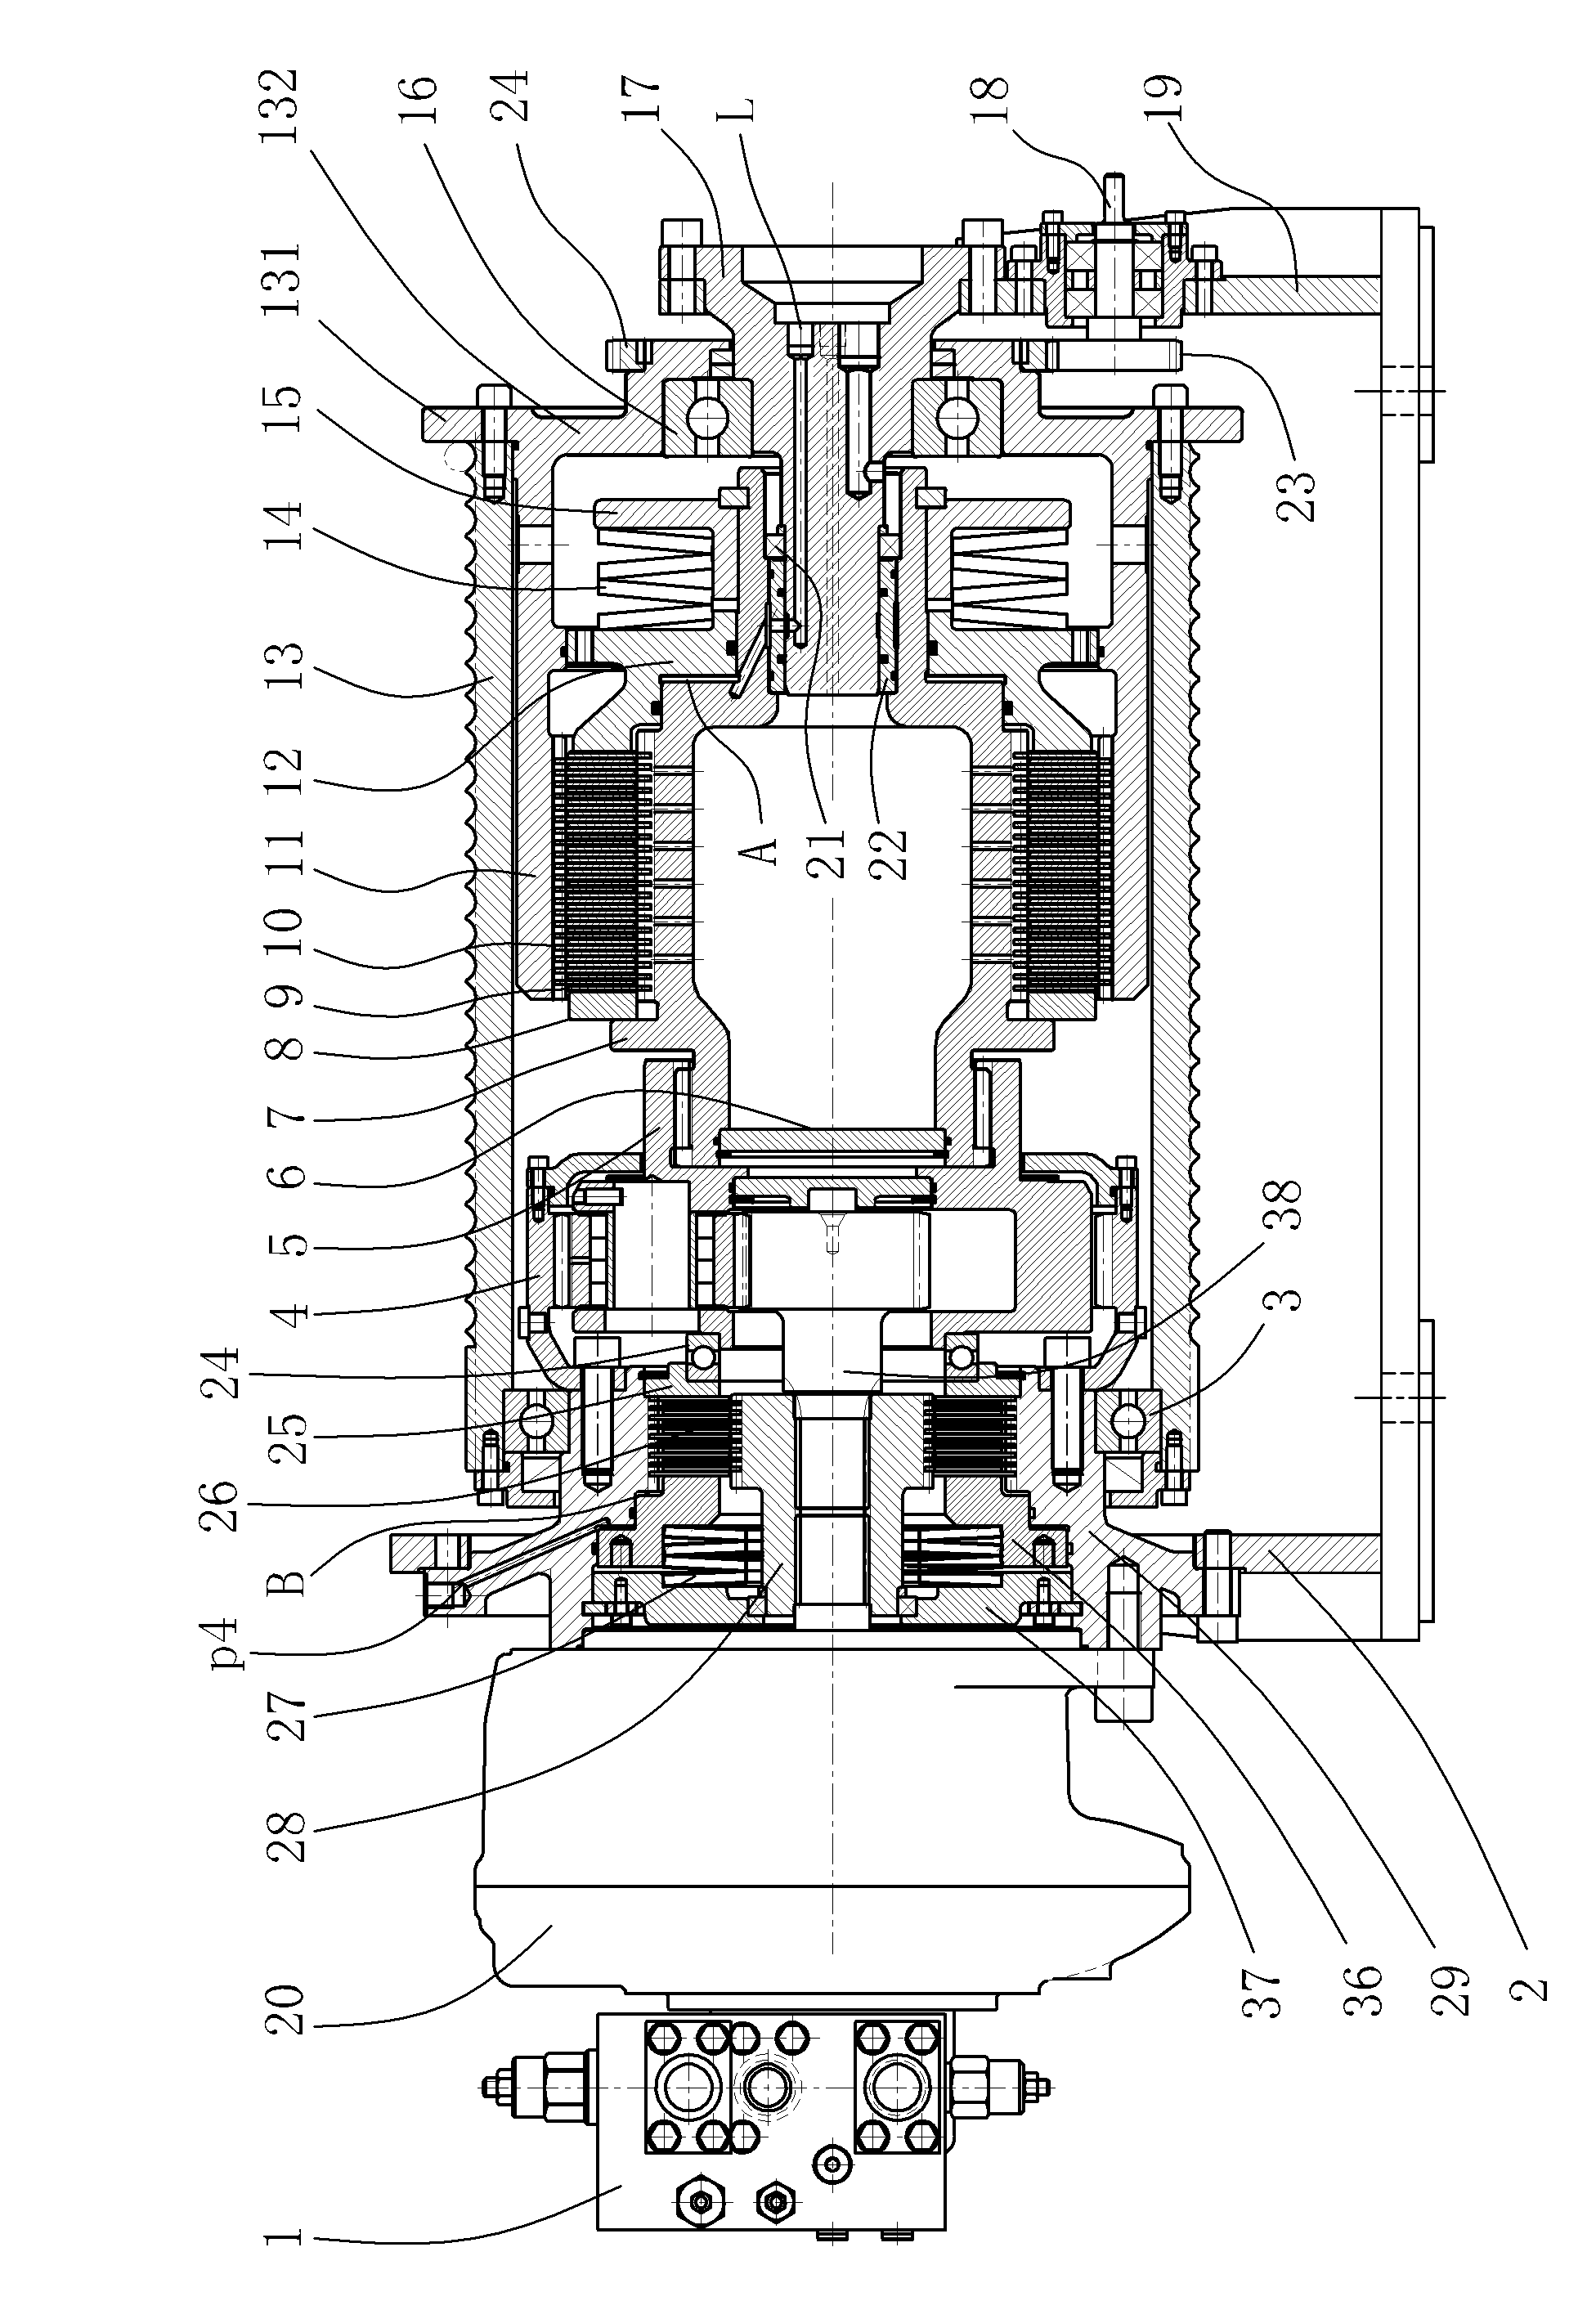 Hydraulic winch